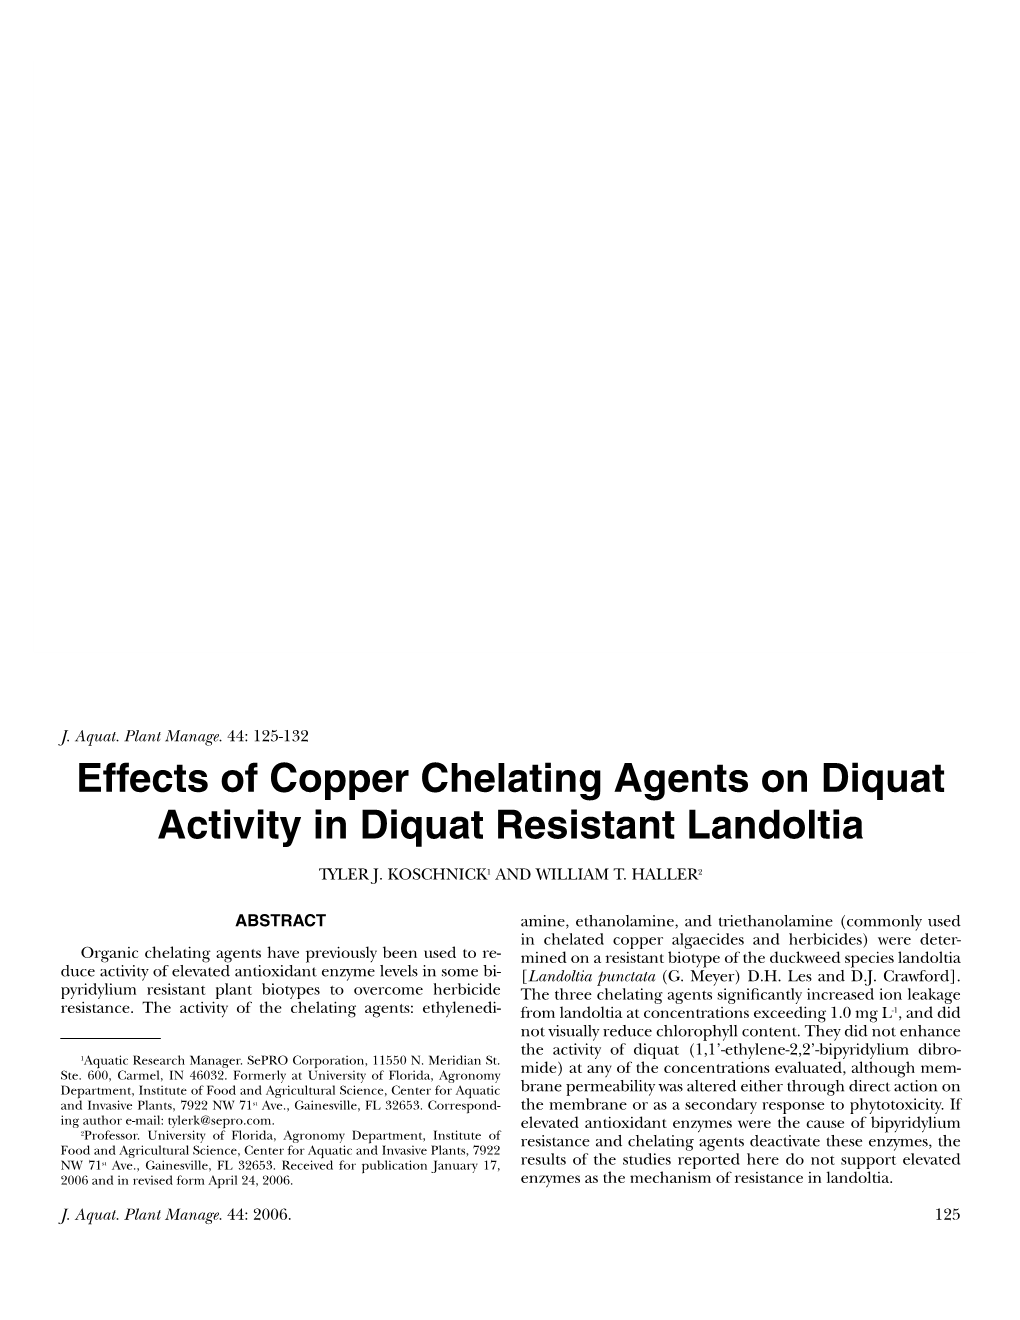 Effects of Copper Chelating Agents on Diquat Activity in Diquat Resistant Landoltia